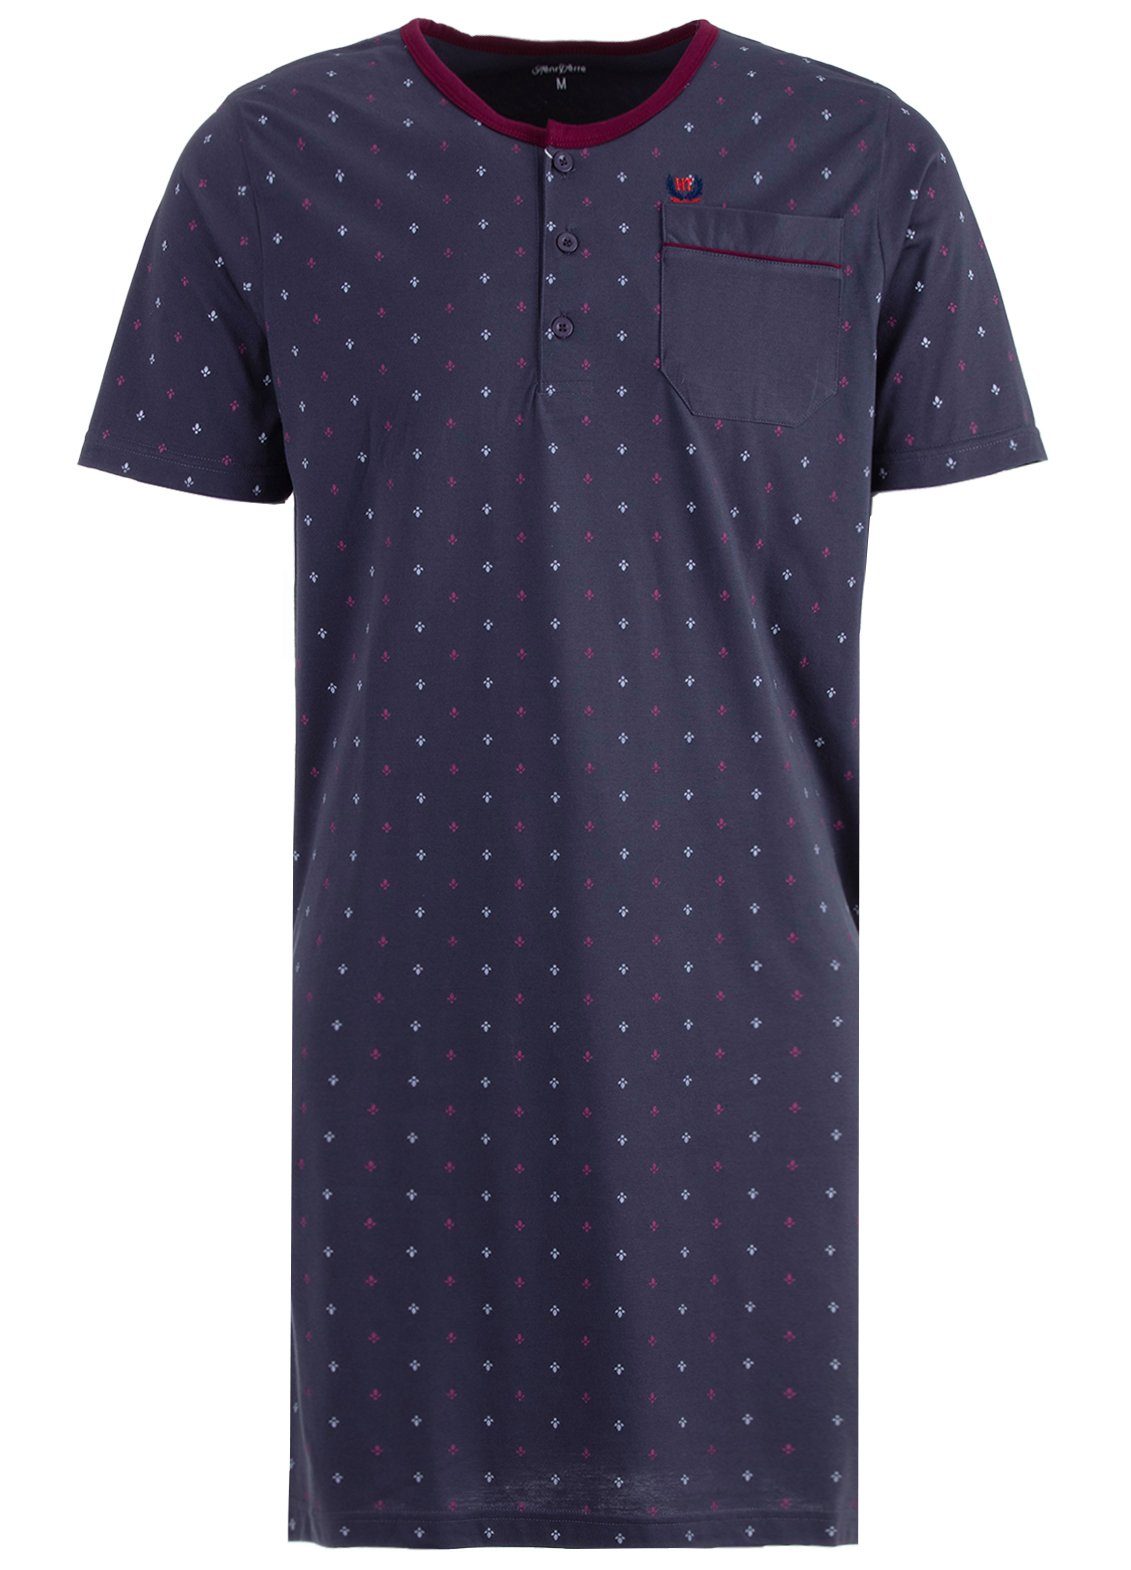 Henry Terre Nachthemd Nachthemd Kurzarm - Blatt anthrazit